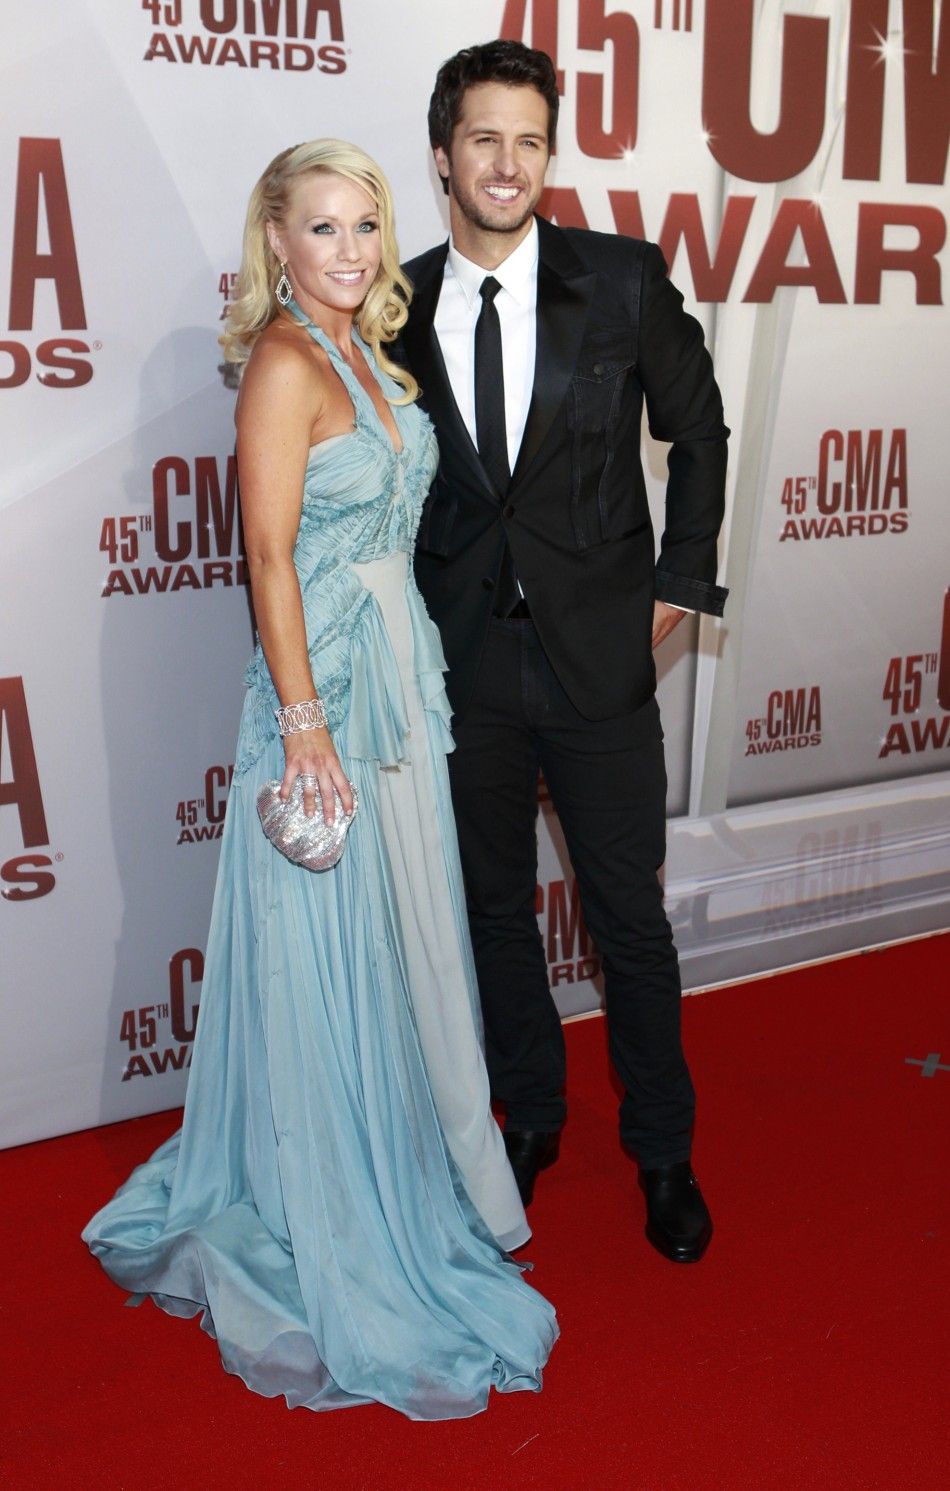 CMA Awards 2011